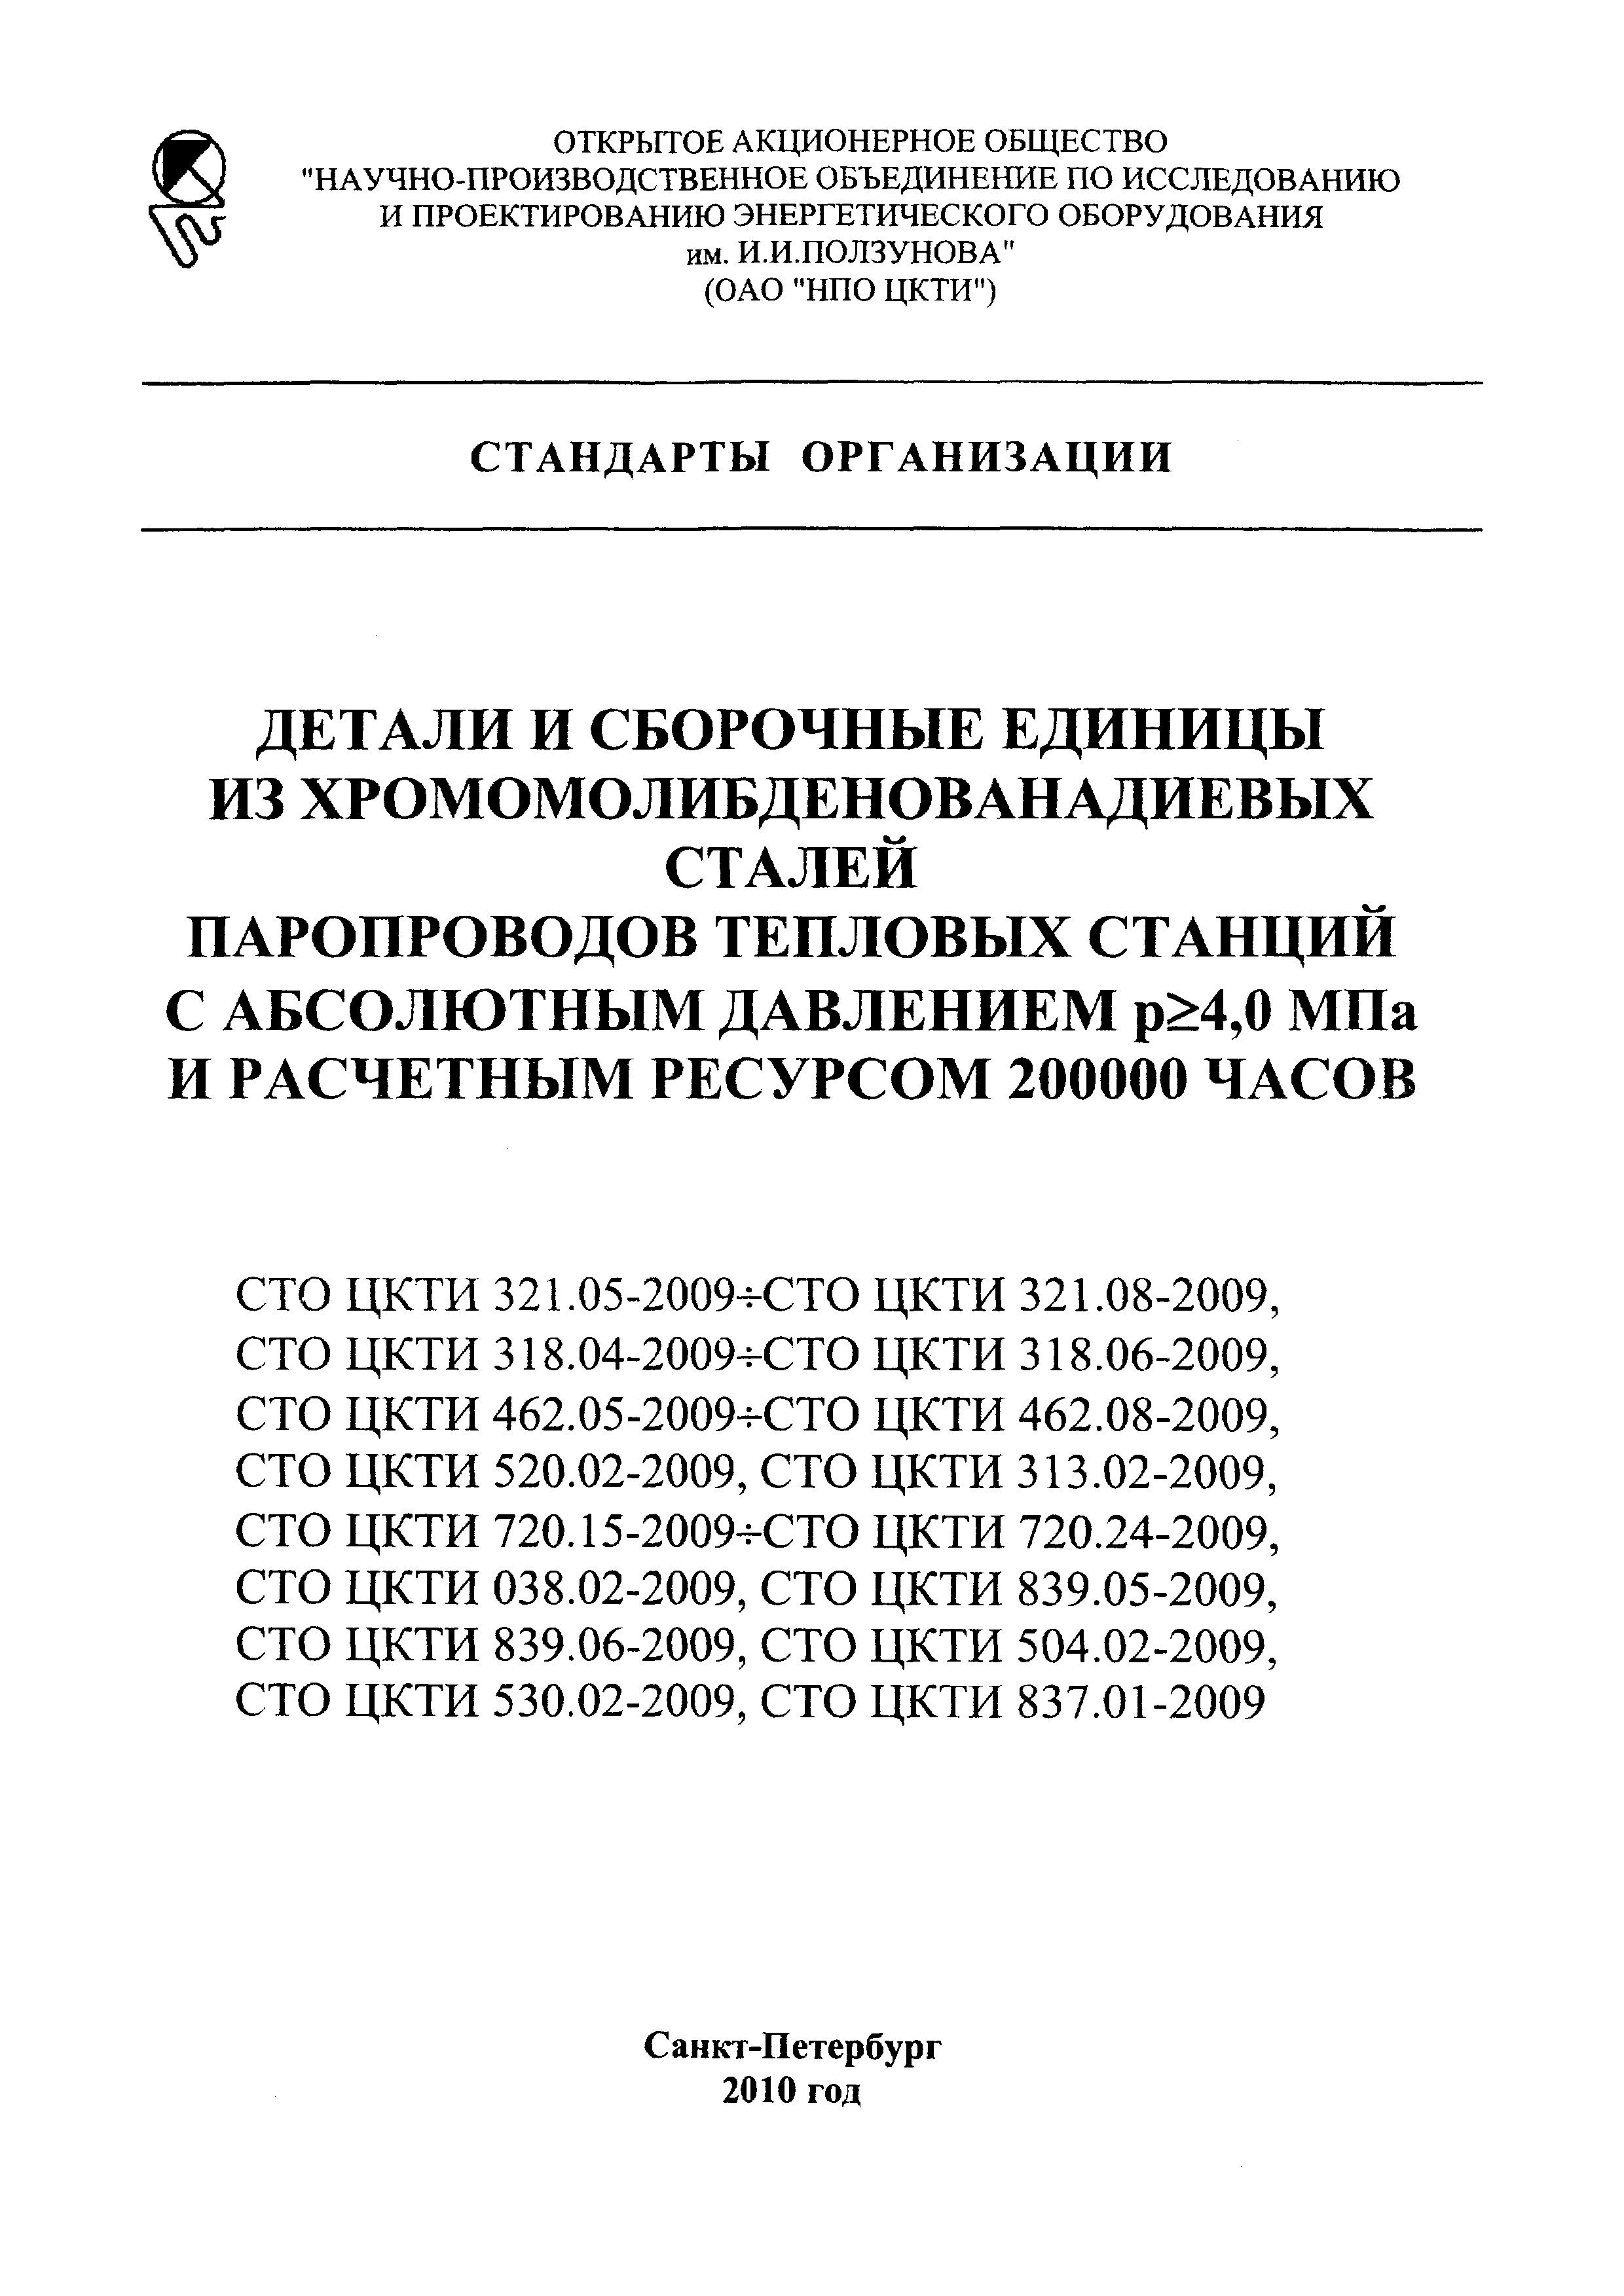 СТО ЦКТИ 720.23-2009